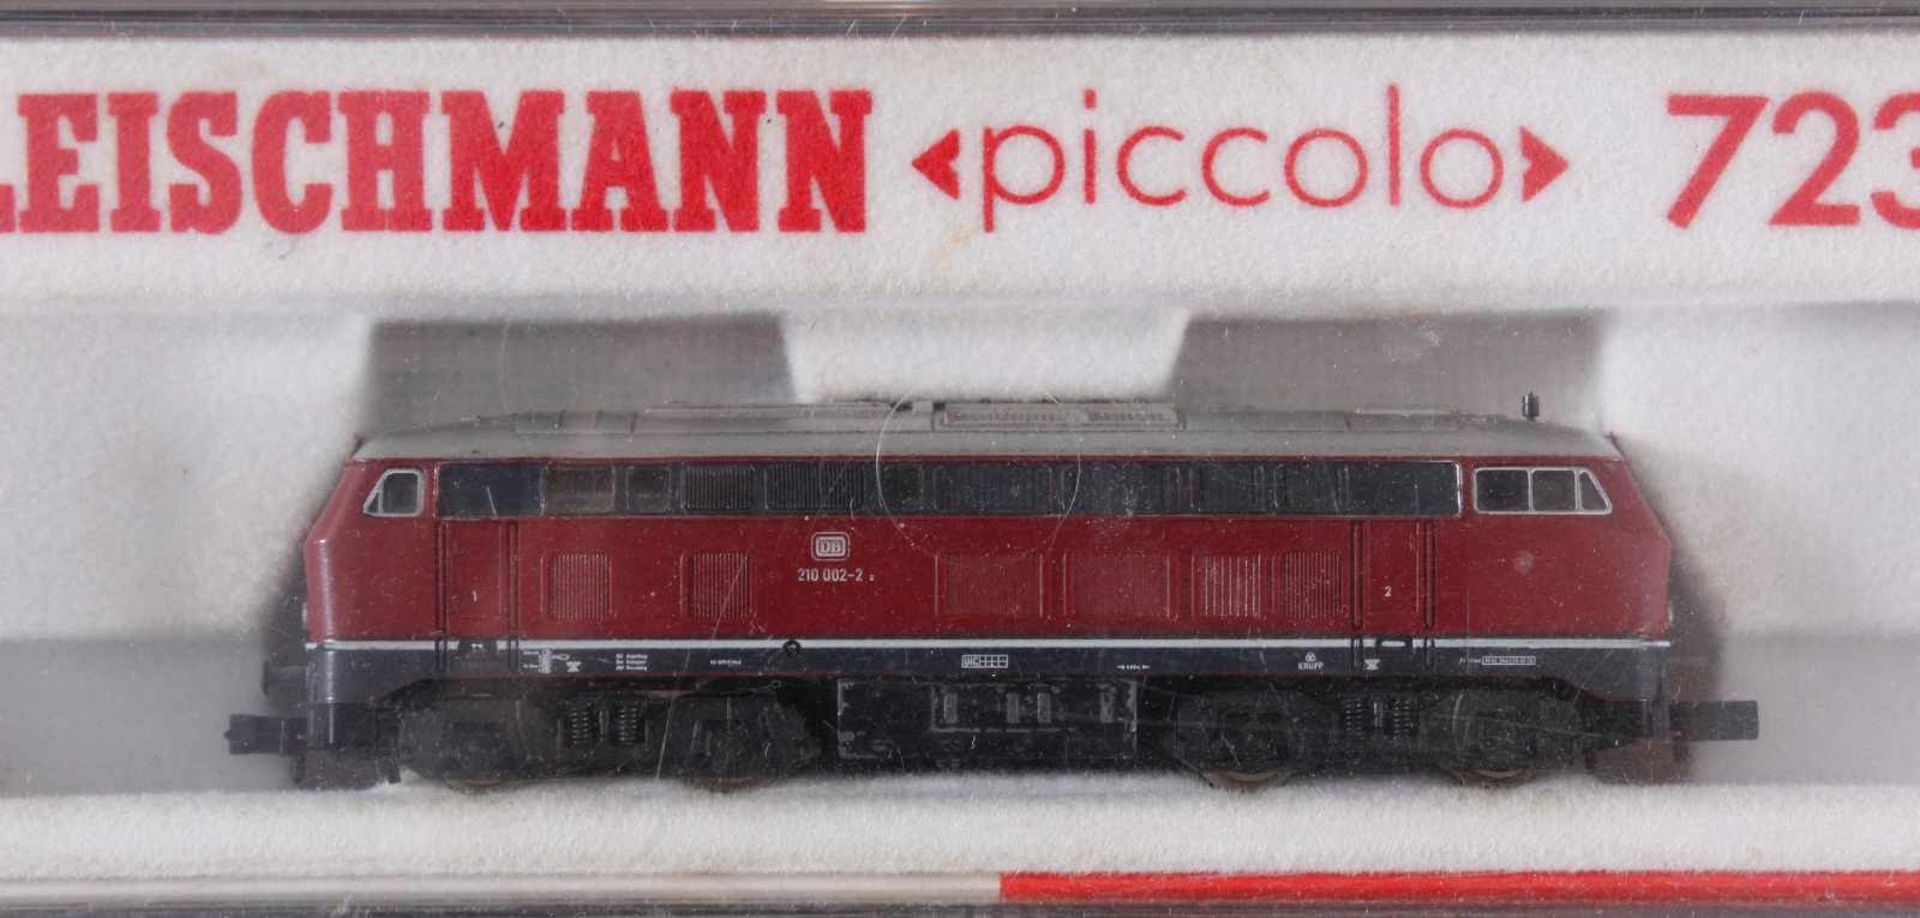 Fleischmann E-Lok Piccolo 7232 mit 5 GüterwaggonsModellnummer der Waggons, 8326, 8389, 8299, 8285 - Bild 2 aus 2